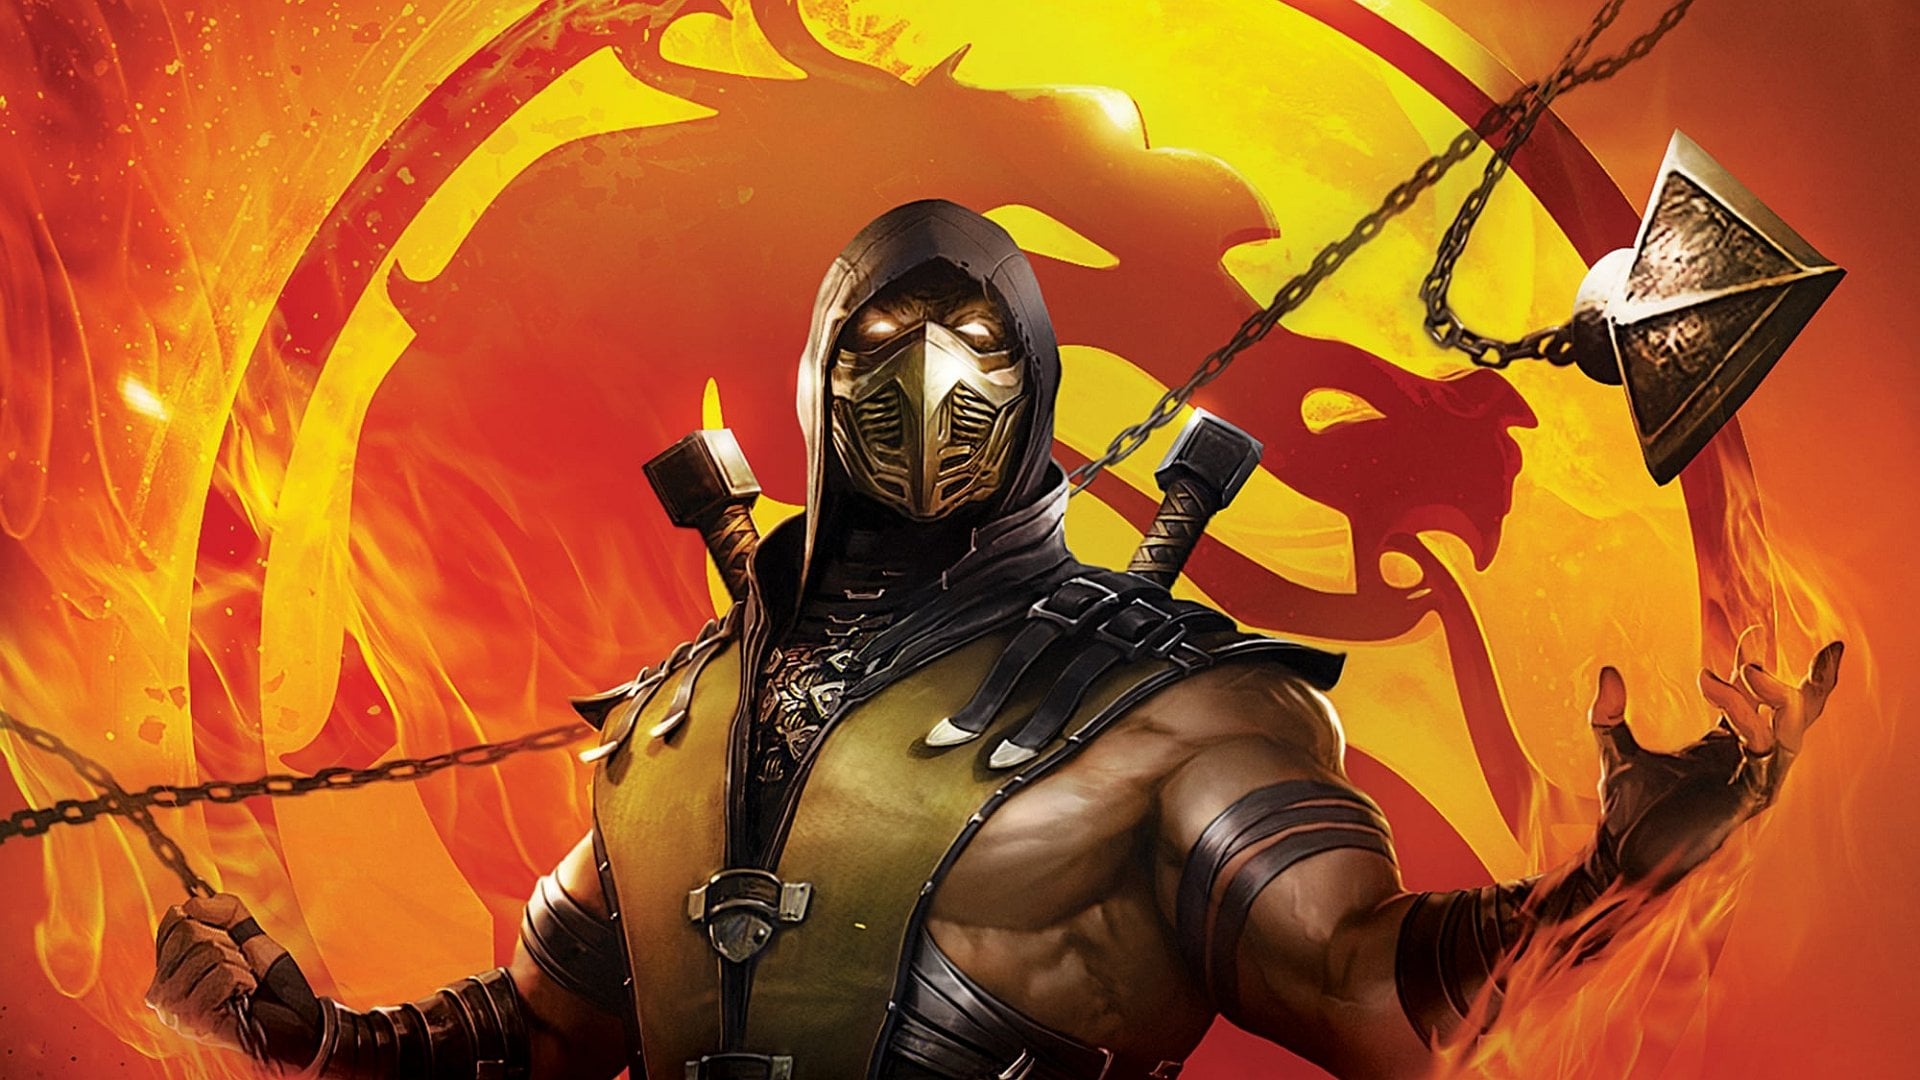 Mortal Kombat Legends: La venganza de Scorpion